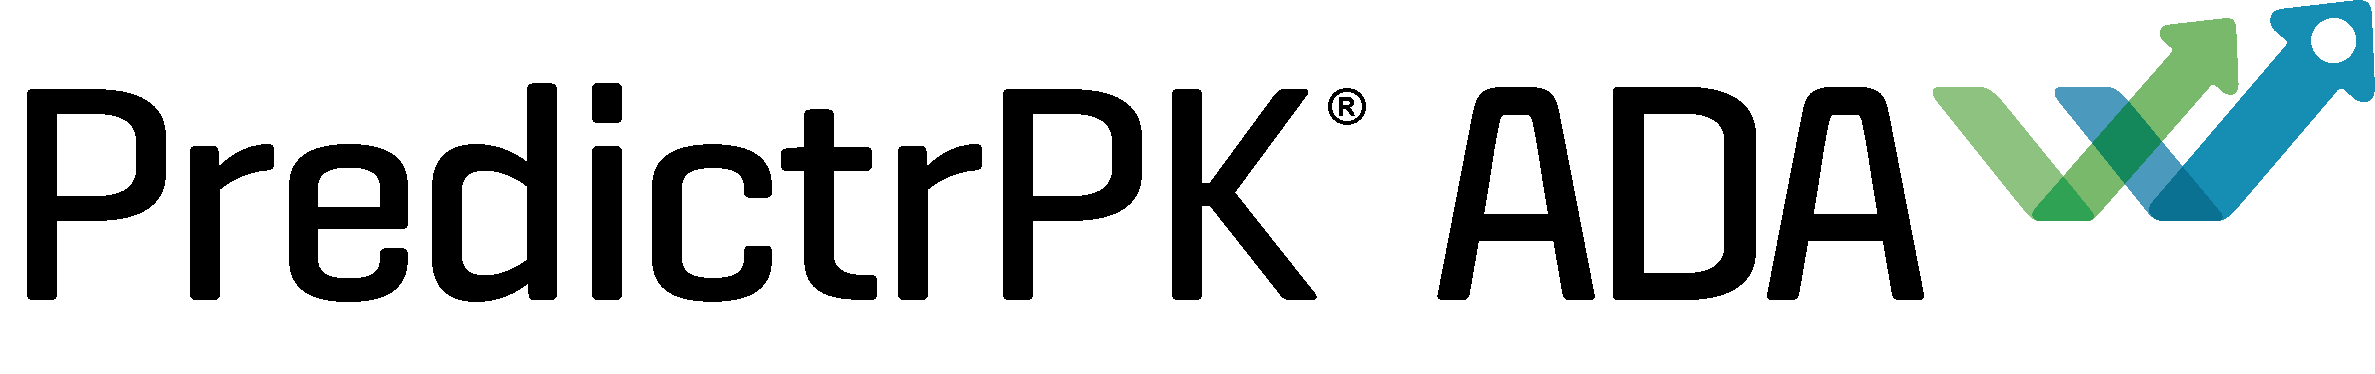 PredictrPK ADA Logo Final